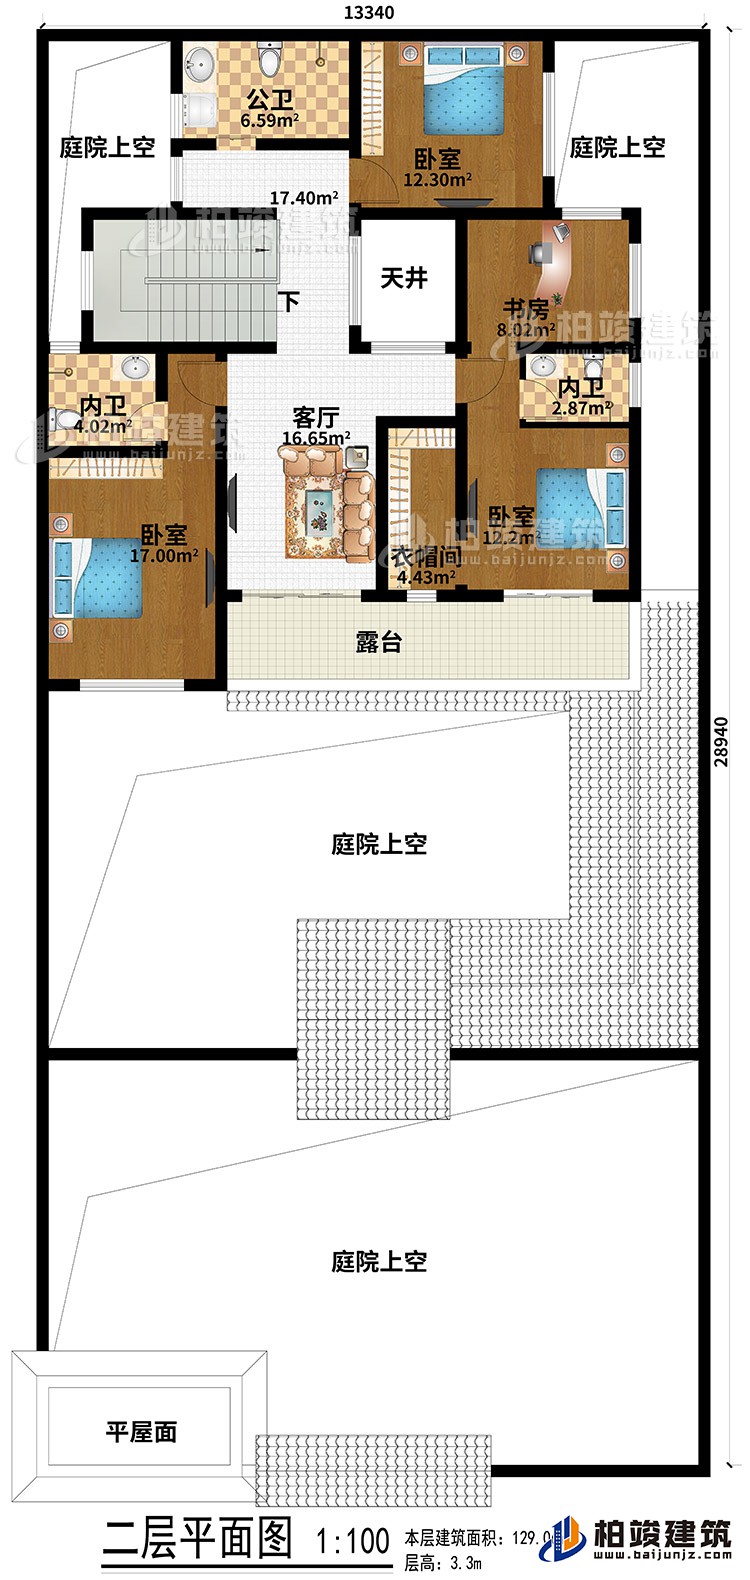 二层：平屋面、4庭院上空、3卧室、客厅、天井、衣帽间、书房、公卫、2内卫